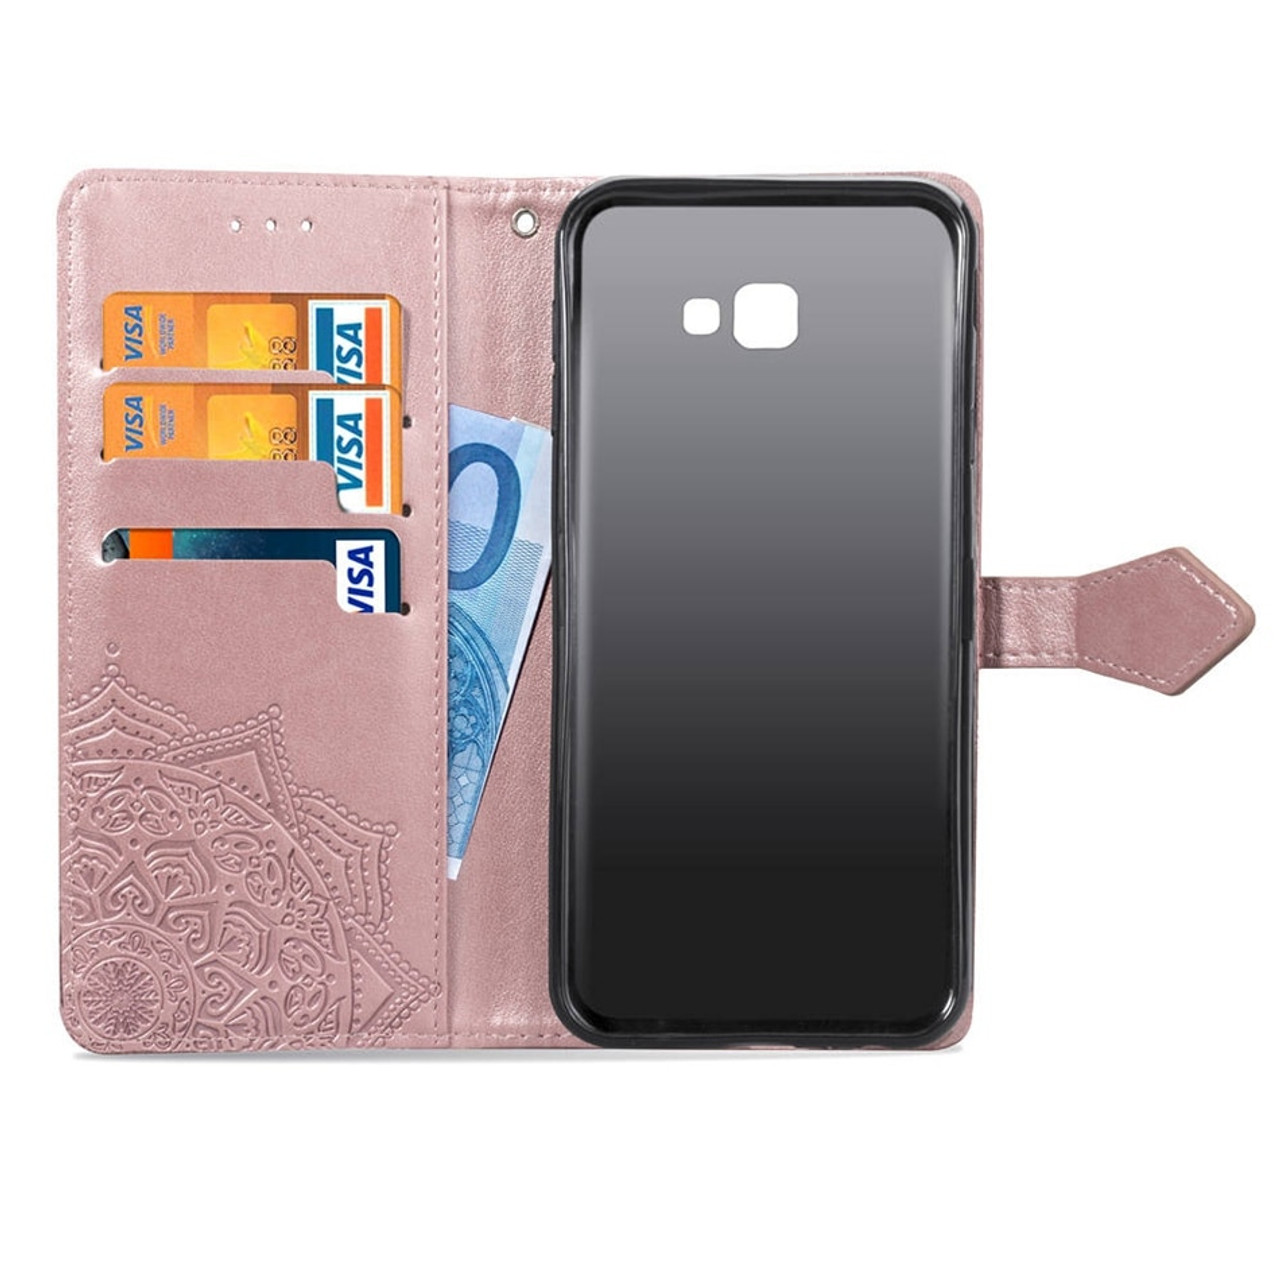 Gemalt Multifunktionale Tasche Cover Brieftasche Schutzhülle für Samsung Galaxy J4 Plus 2018 in Kapok Leder Filp Wallet Handyhülle Flipcase ToneSun J4 Plus 2018 Hülle Case 